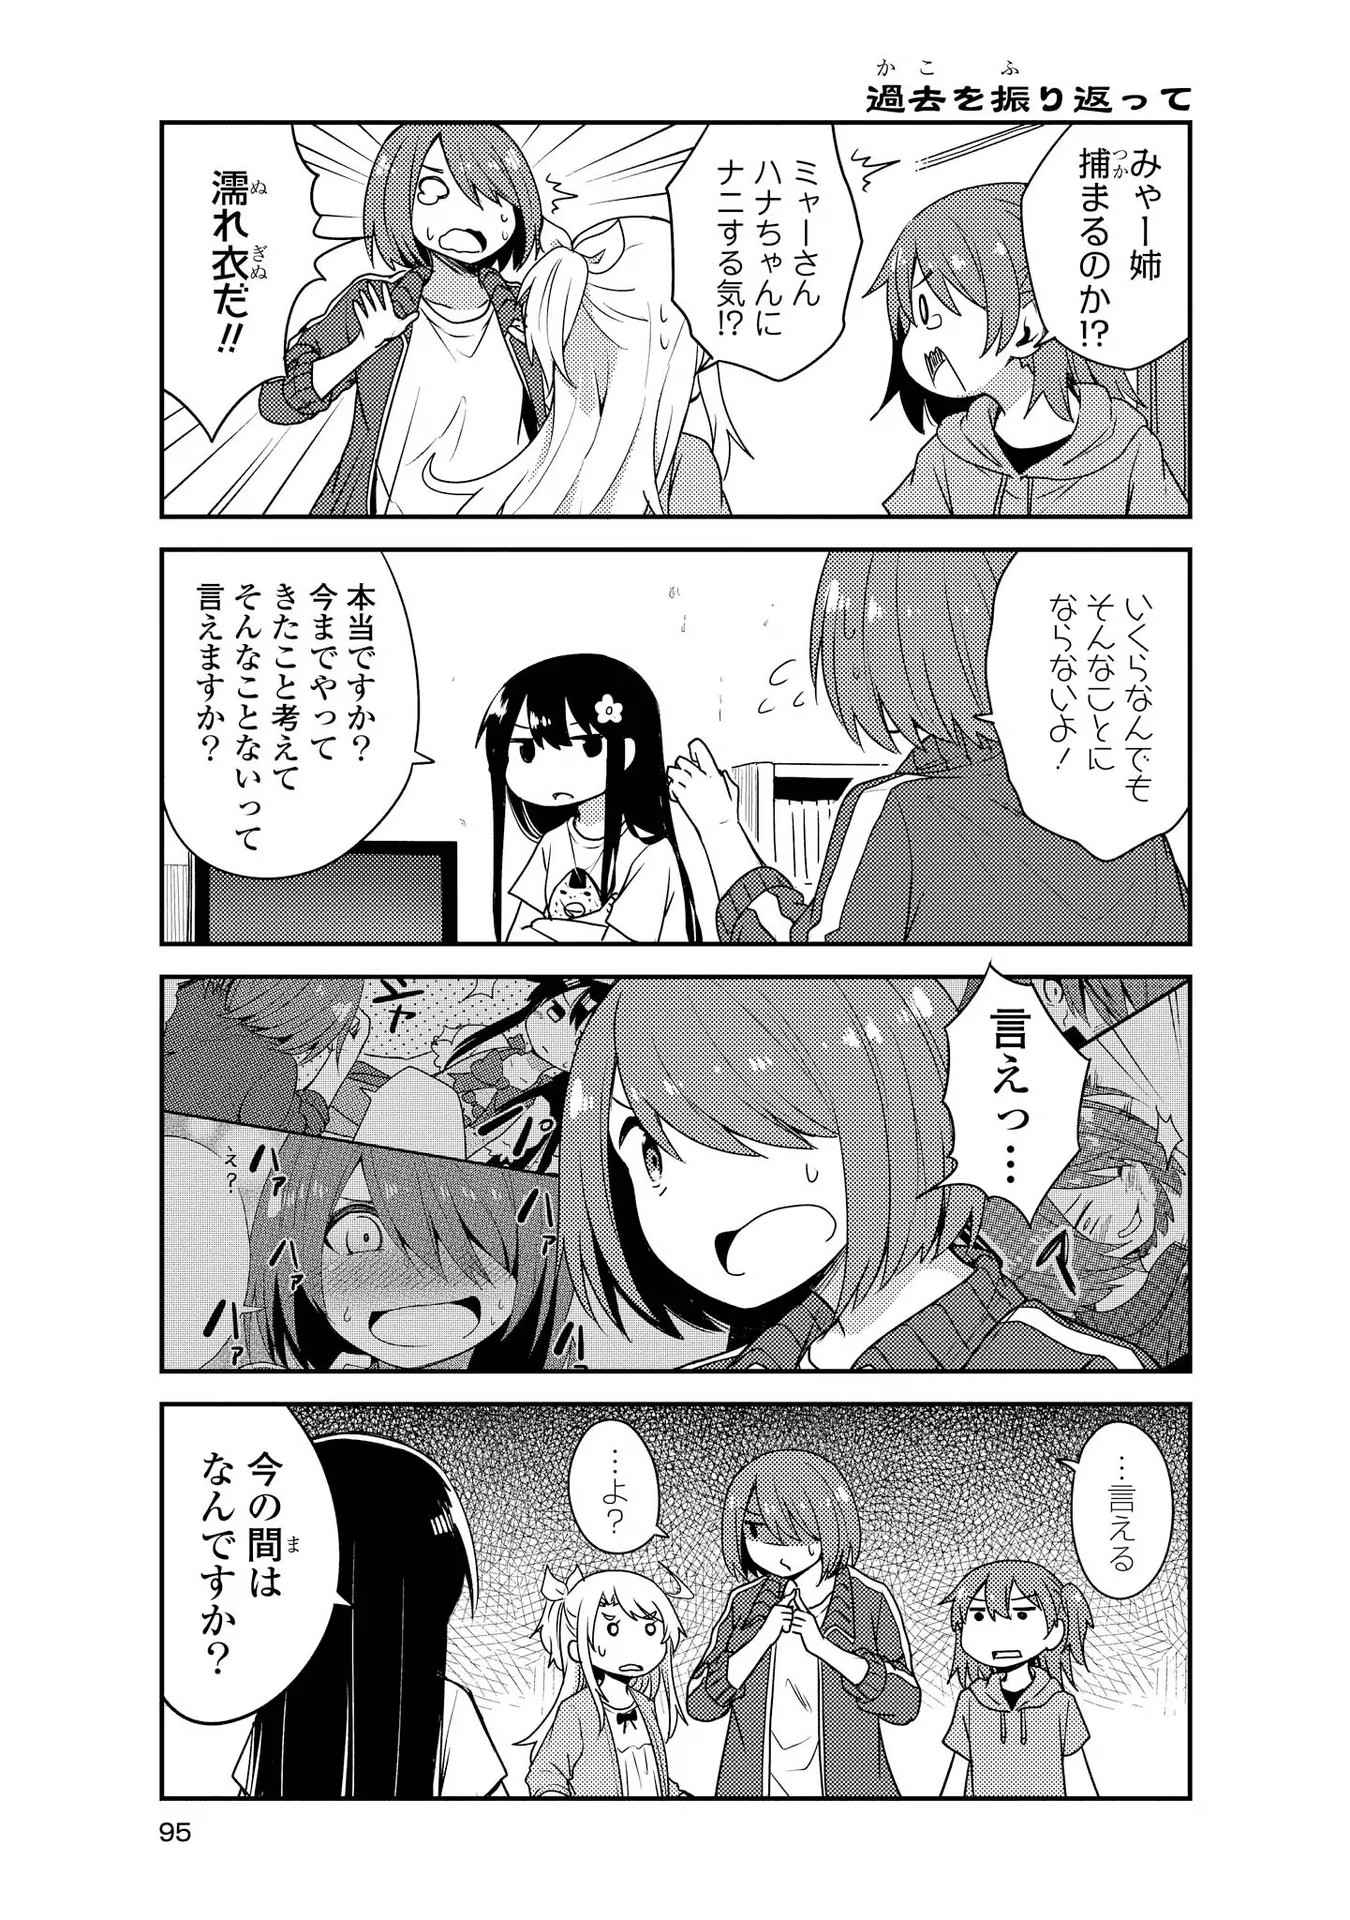 Watashi ni Tenshi ga Maiorita! - Chapter 17 - Page 5